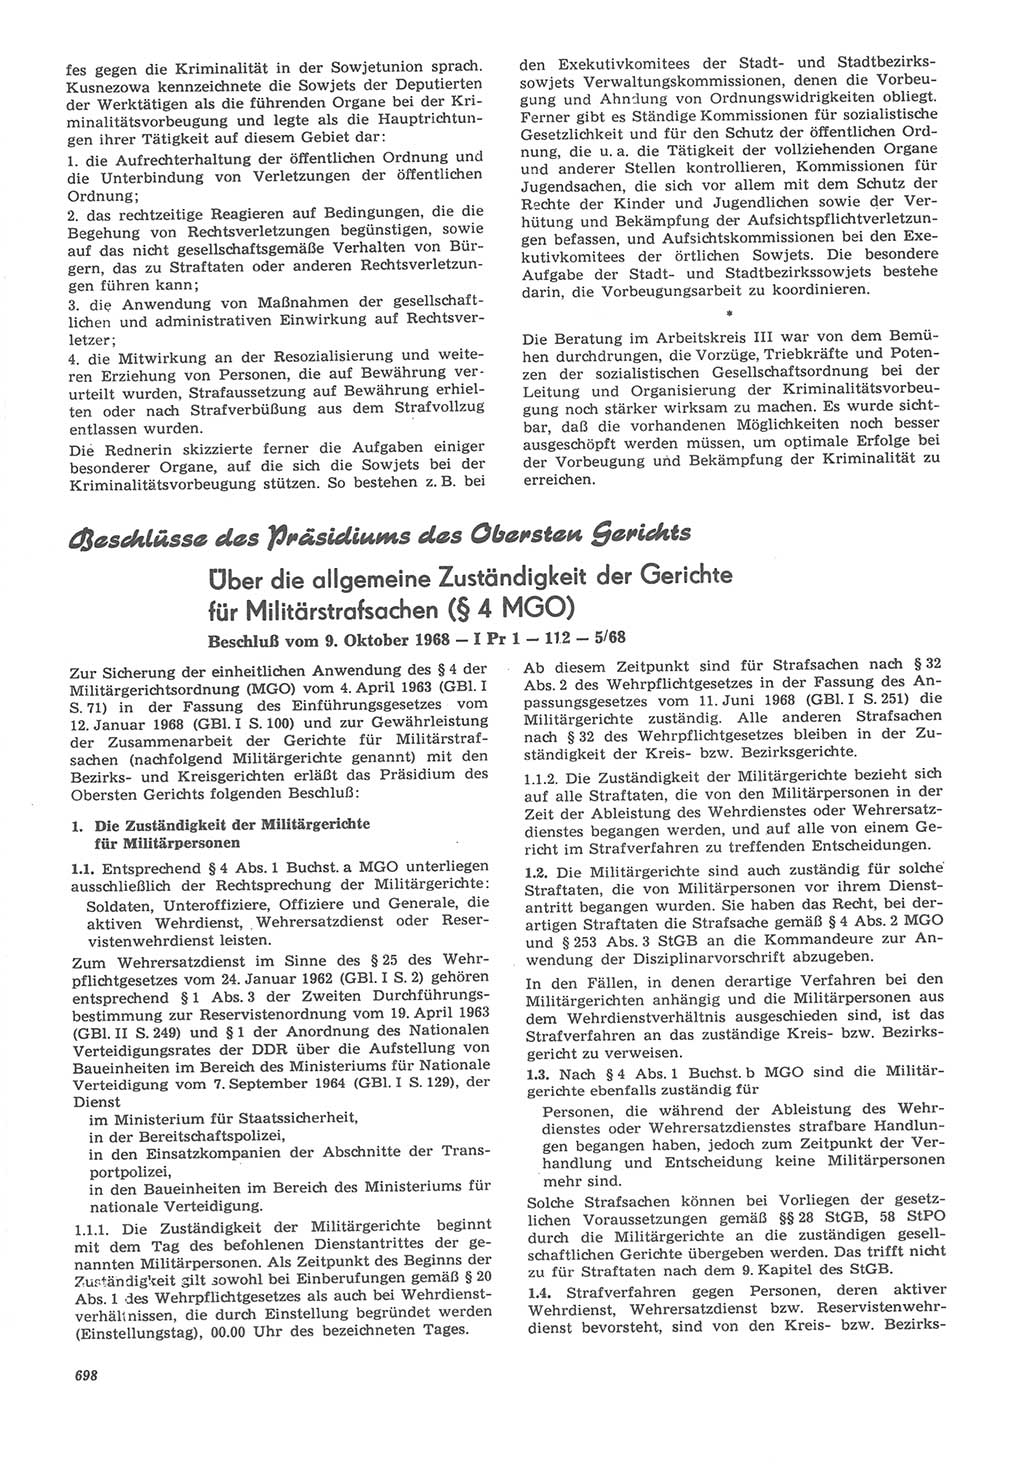 Neue Justiz (NJ), Zeitschrift für Recht und Rechtswissenschaft [Deutsche Demokratische Republik (DDR)], 22. Jahrgang 1968, Seite 698 (NJ DDR 1968, S. 698)